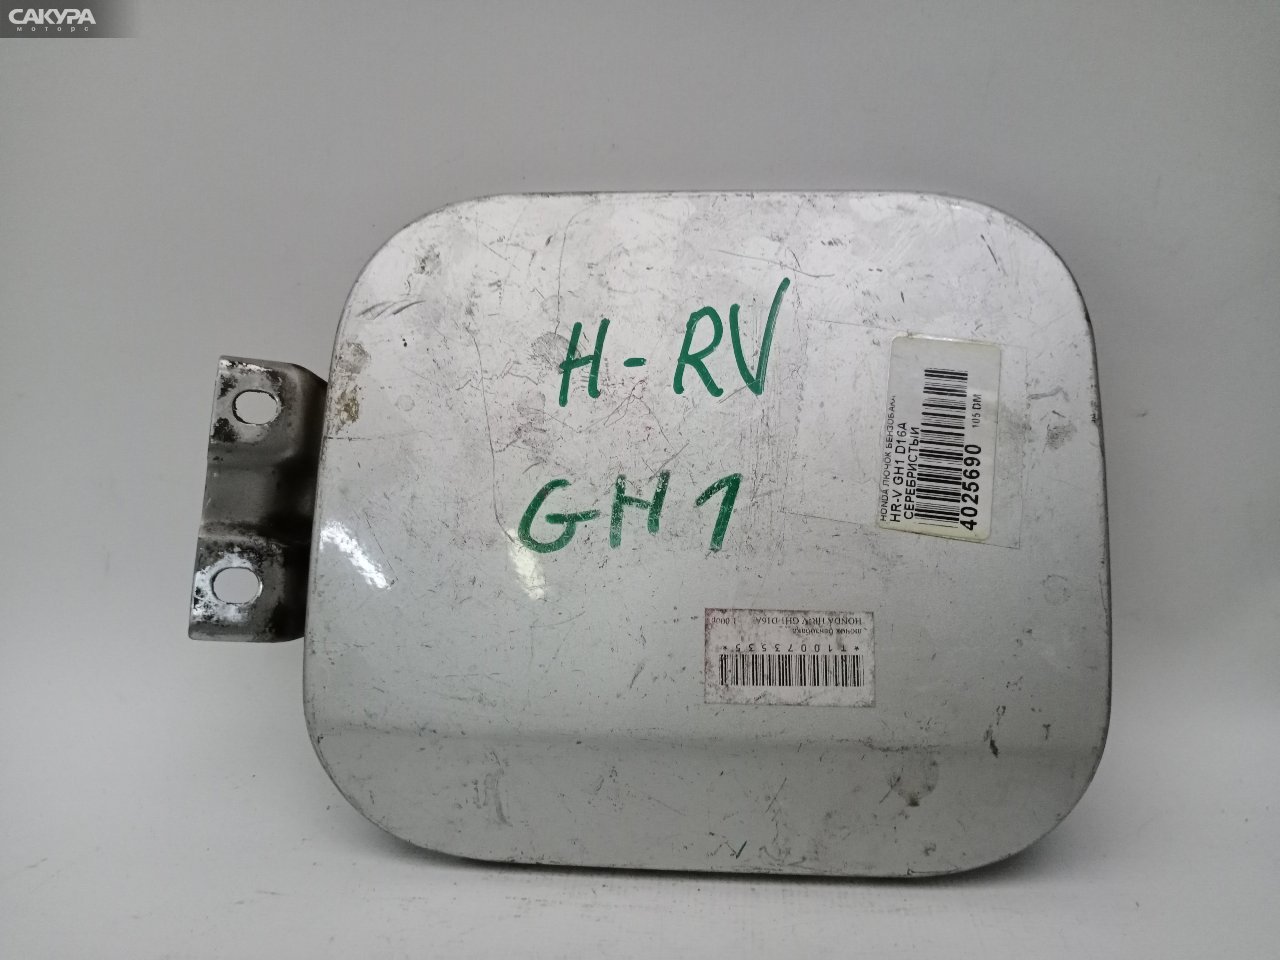 Лючок топливного бака Honda HR-V GH1 D16A: купить в Сакура Красноярск.